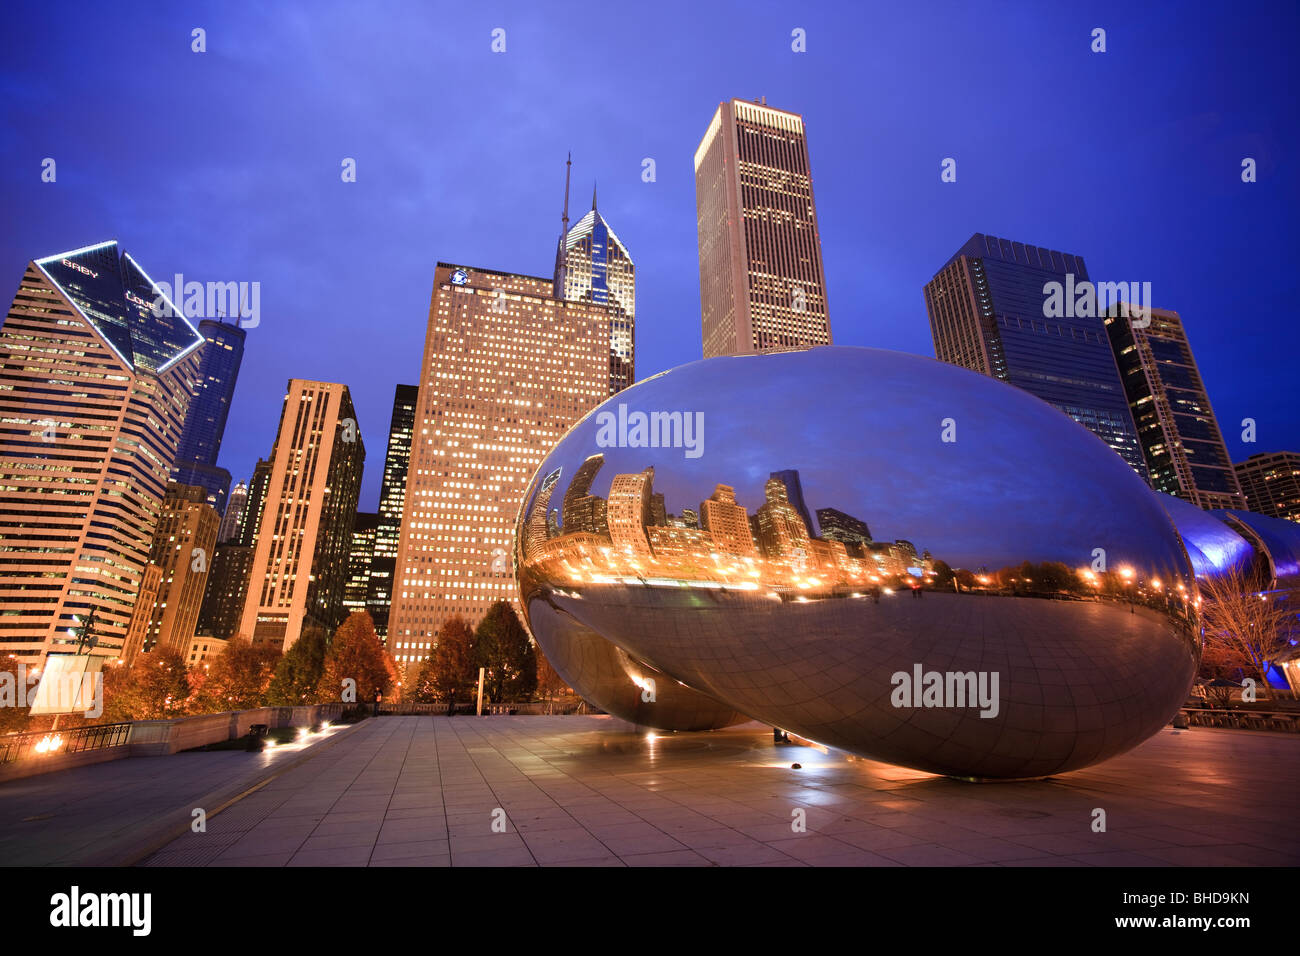 La Cloud Gate sculpture aussi connu comme 'le bean' dans le parc du Millénaire vue au crépuscule Banque D'Images